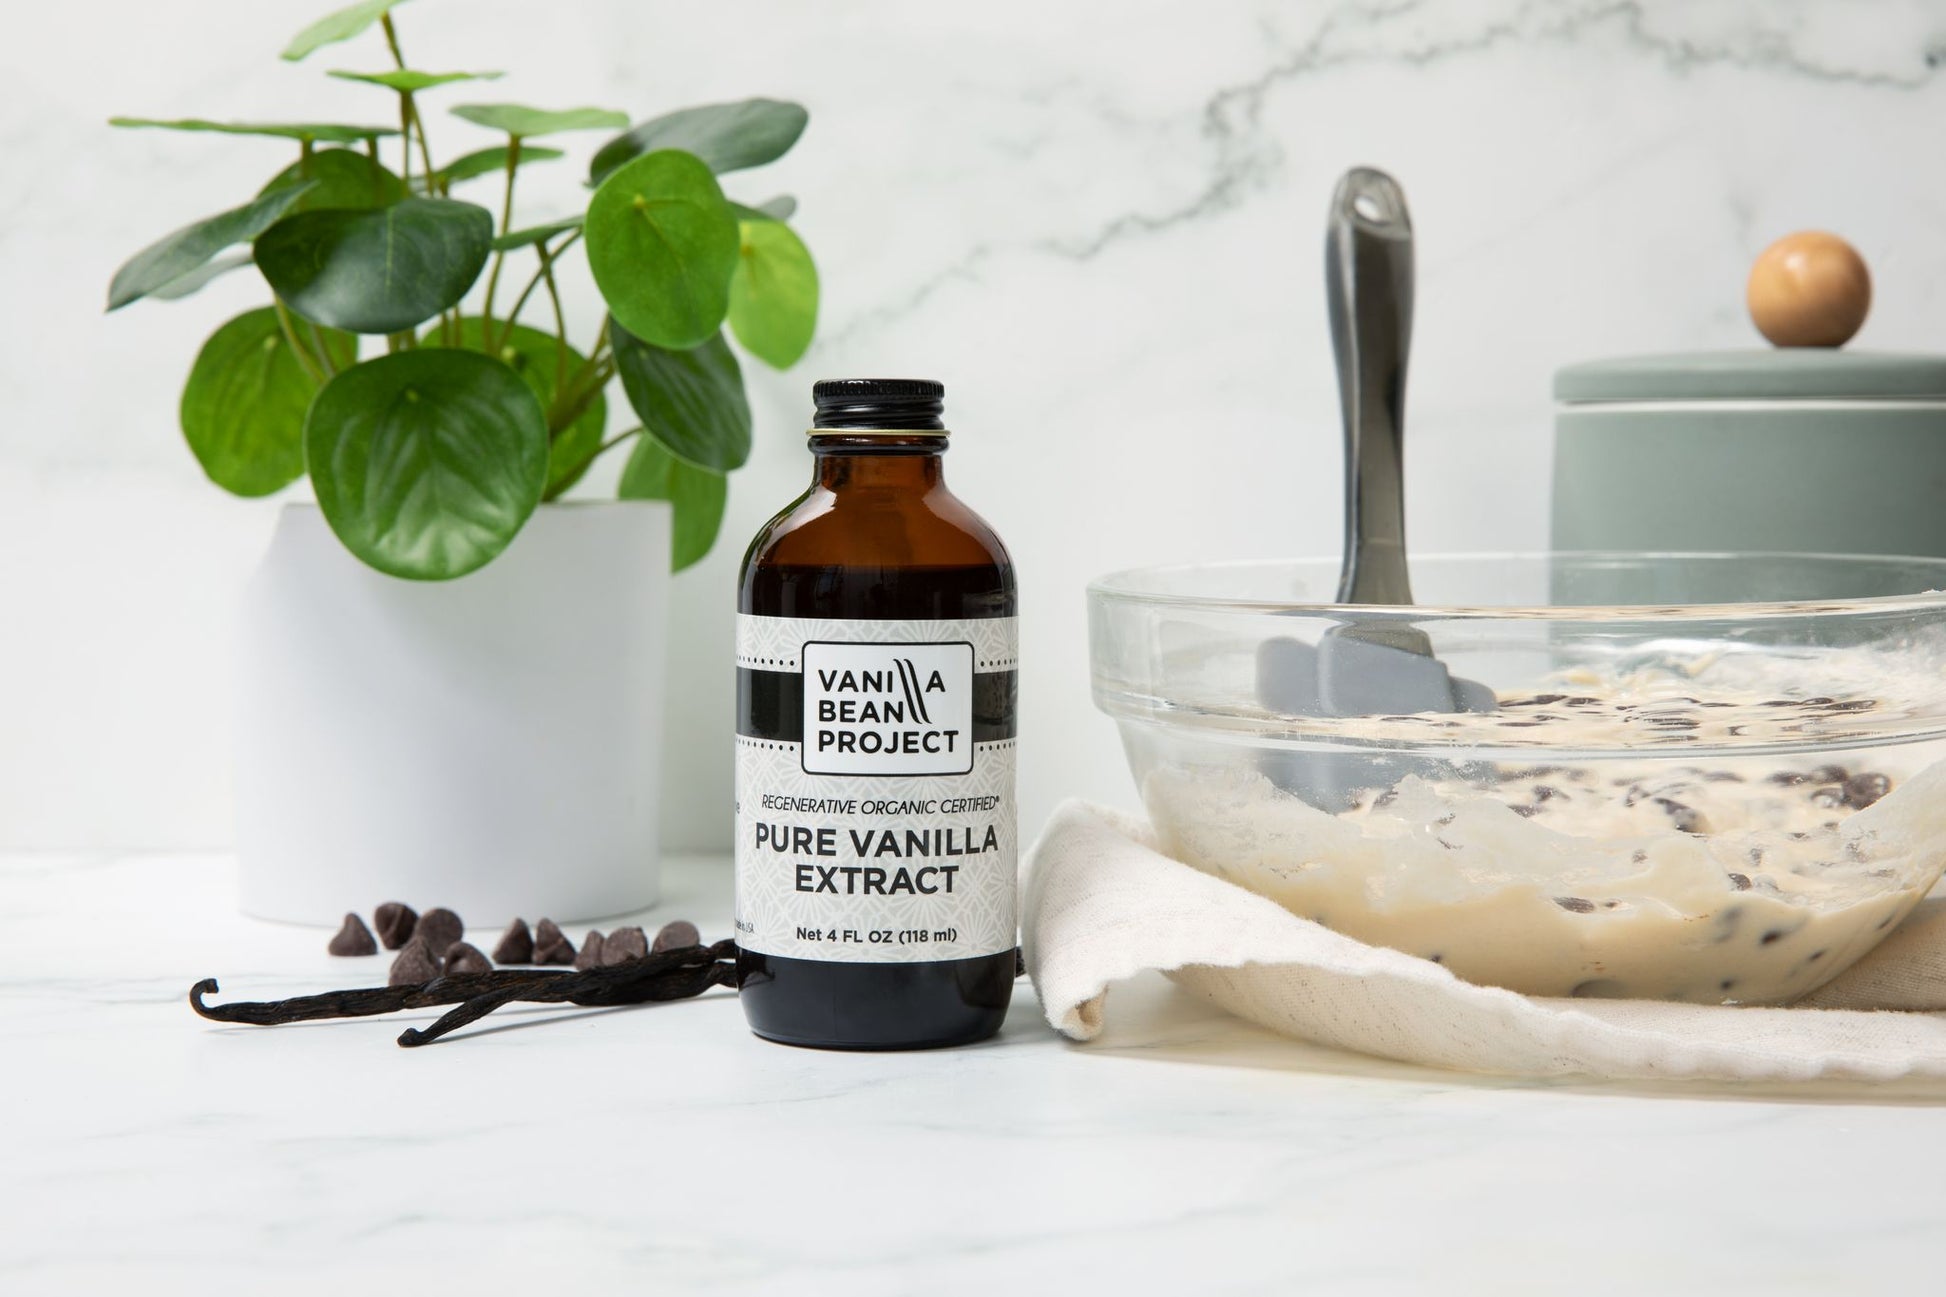 Vanilla Essential Oil -100% Pure and Natural -Therapeutic Grade